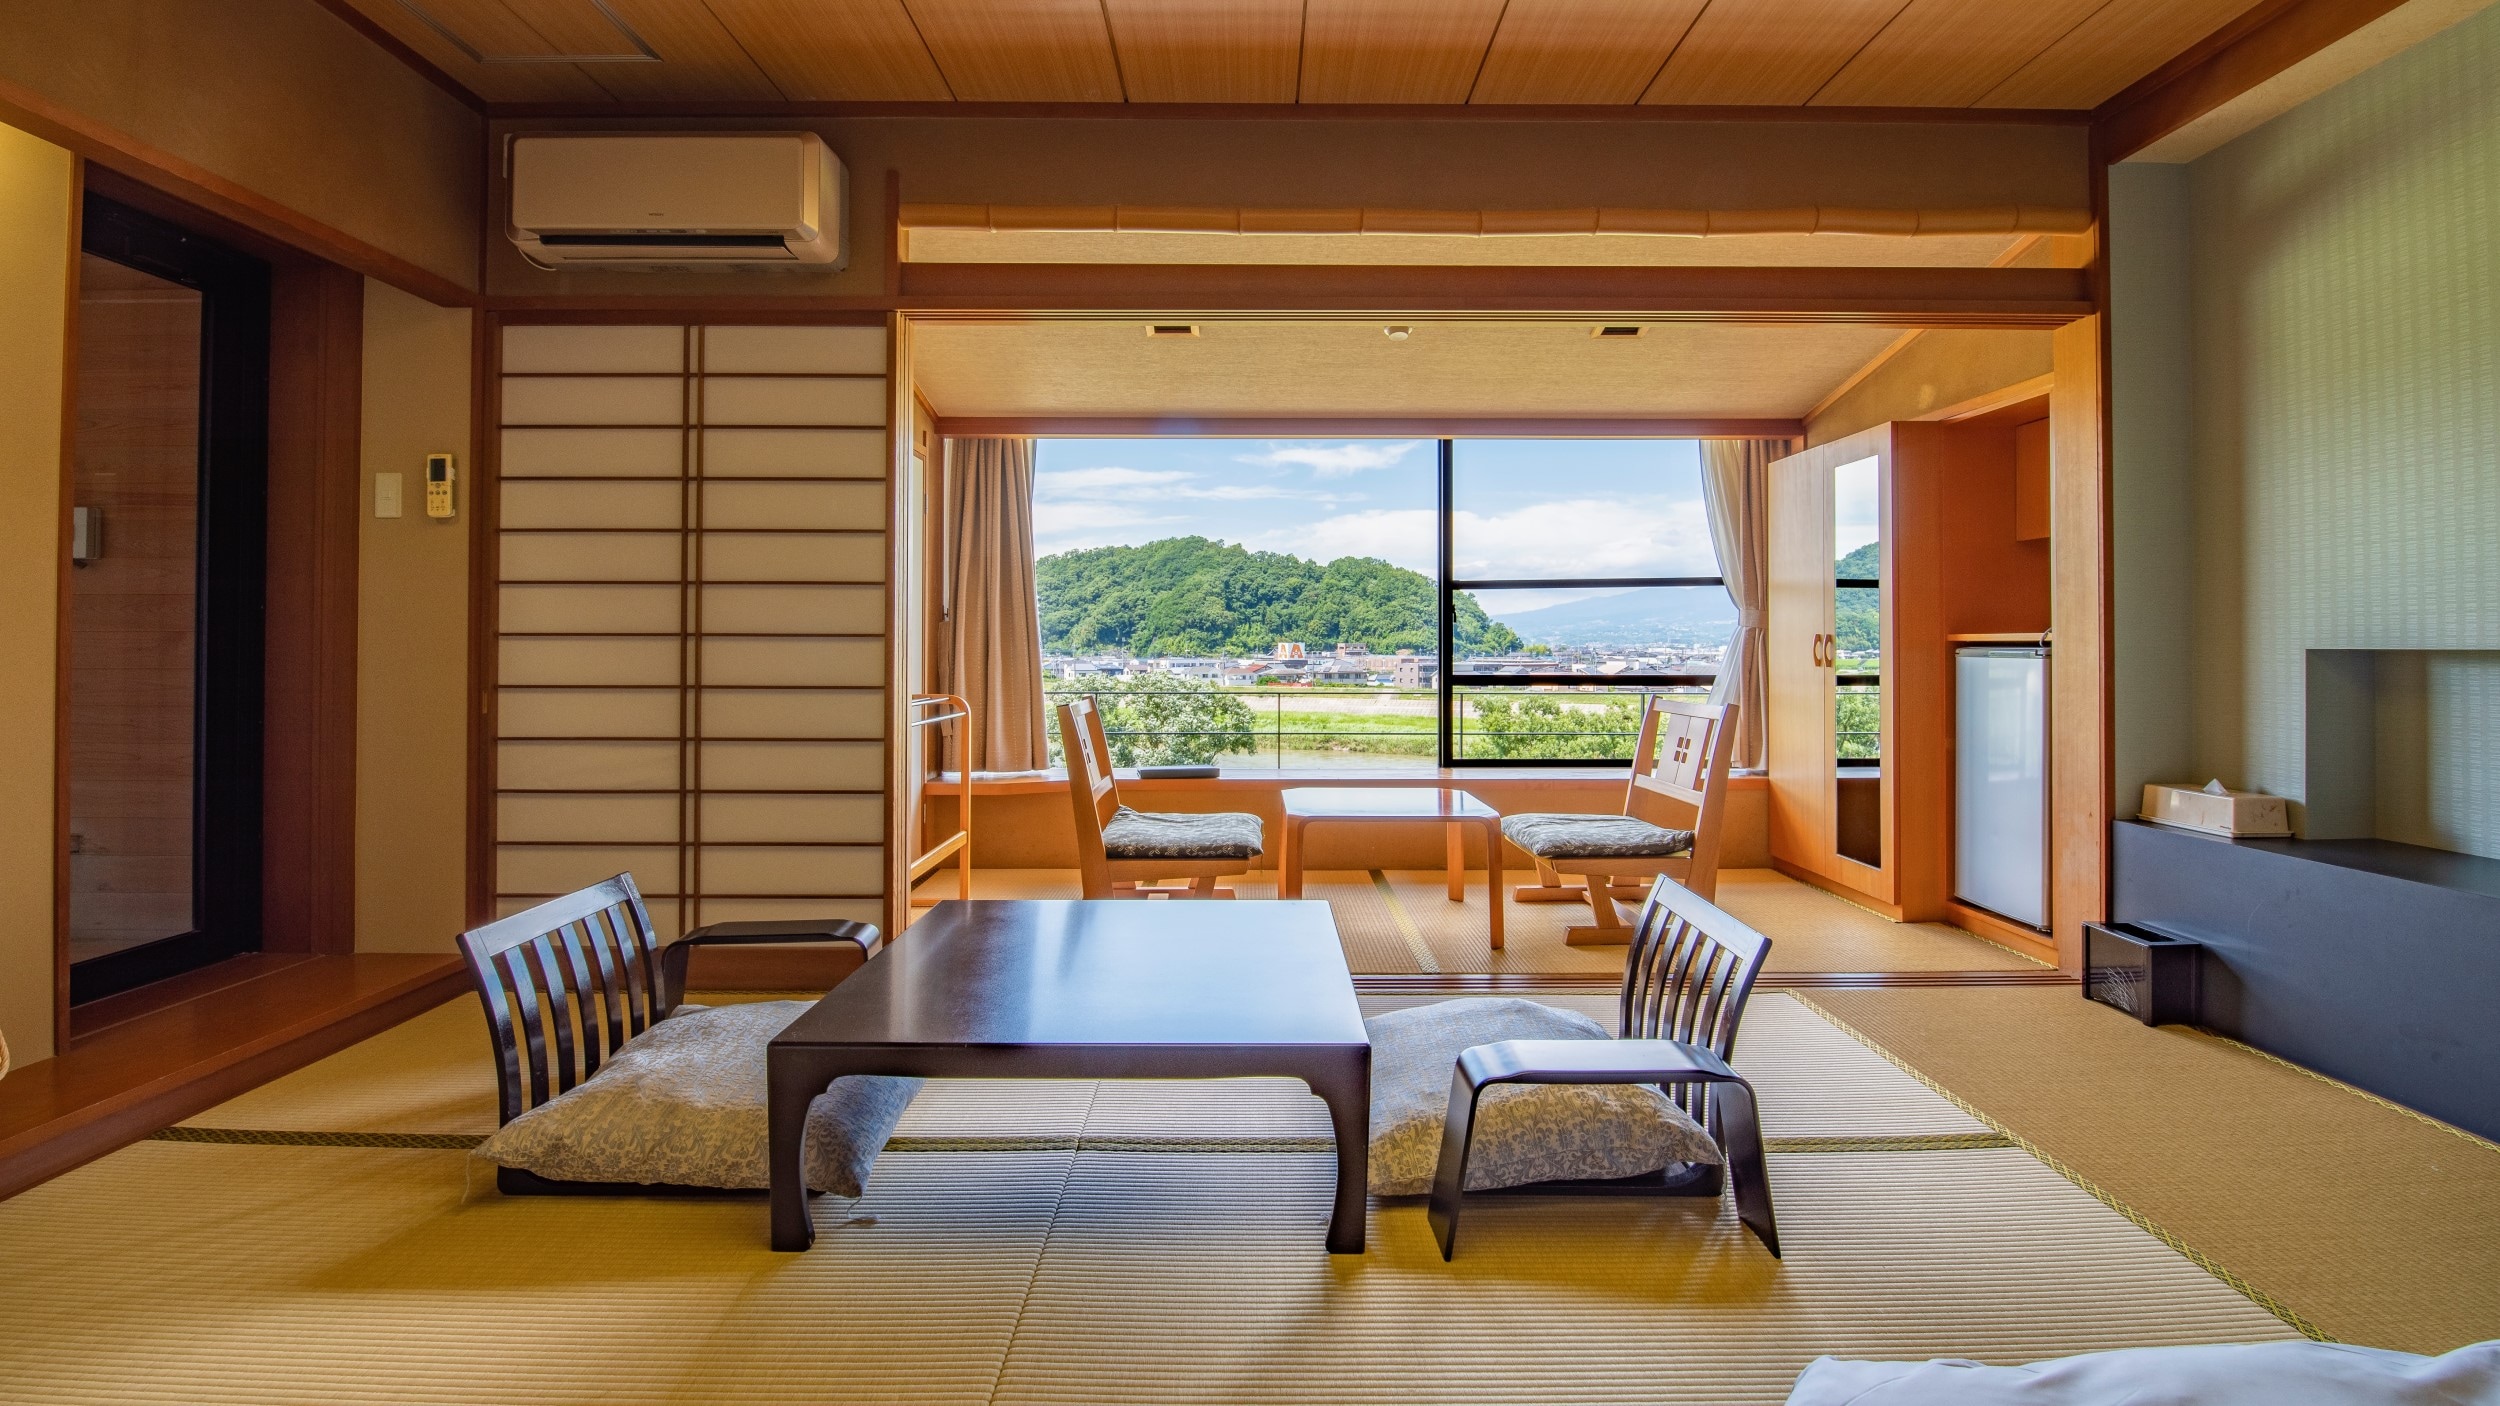 從窗戶可以看到富士山和群山的標準日式客房